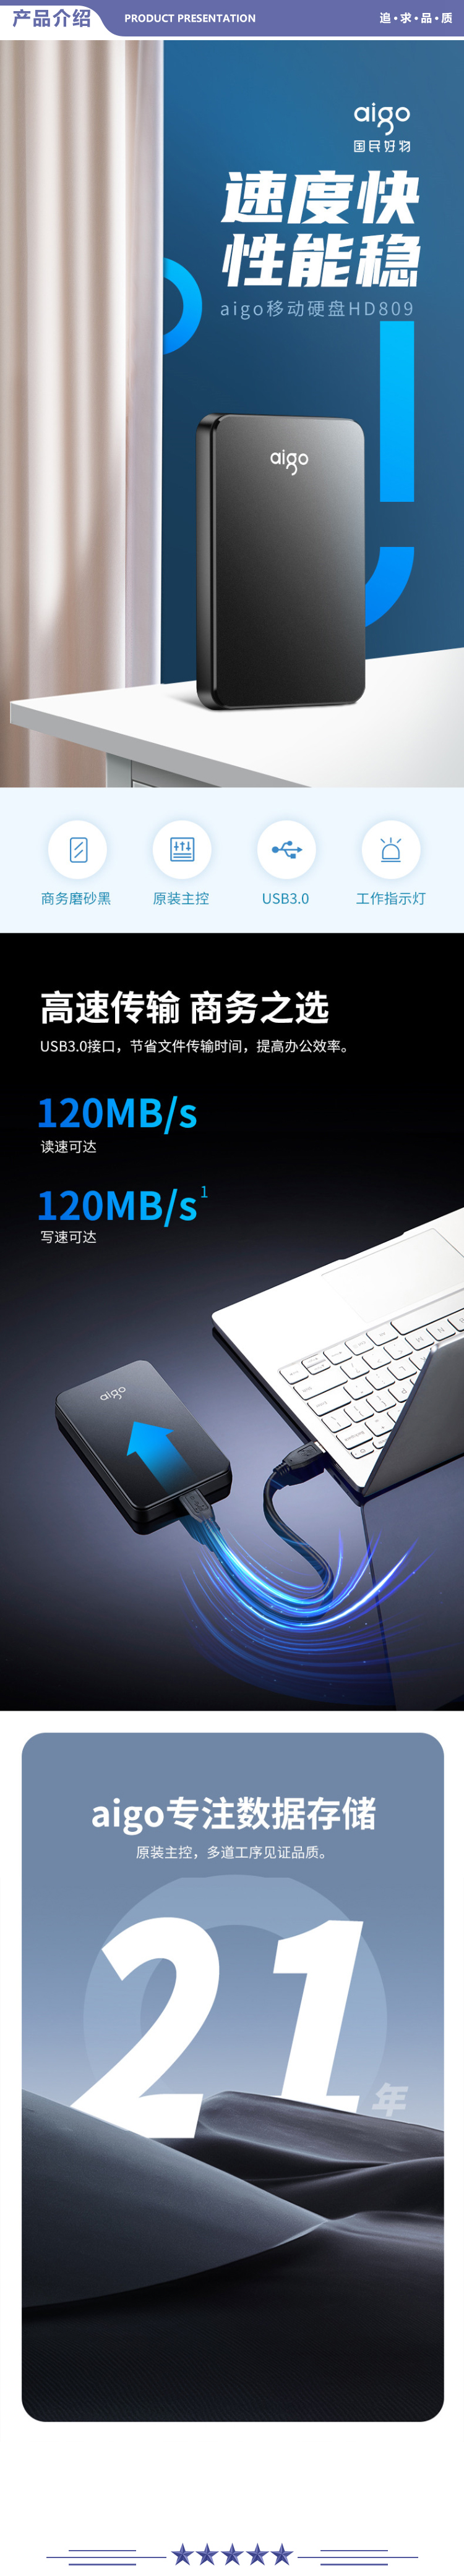 爱国者 (aigo) HD809 1TB USB3.0 移动硬盘 黑色 稳定高速传输 简约设计 睿智之美 商务便携 2.jpg